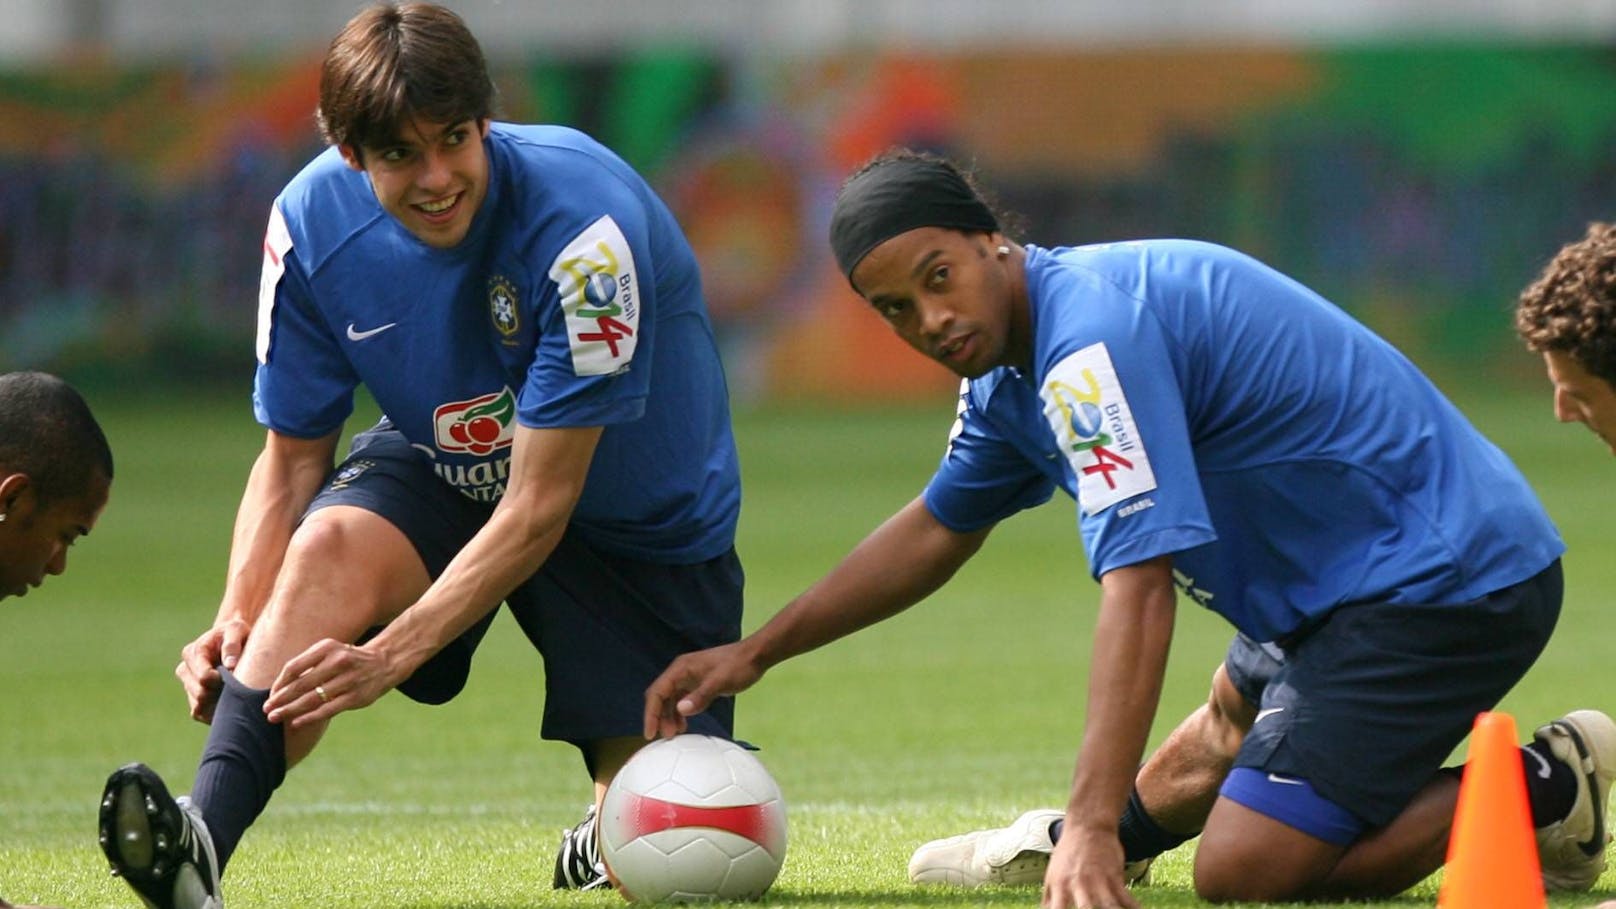 Ü35-WM mit Ronaldinho und Henry steigt im Sommer